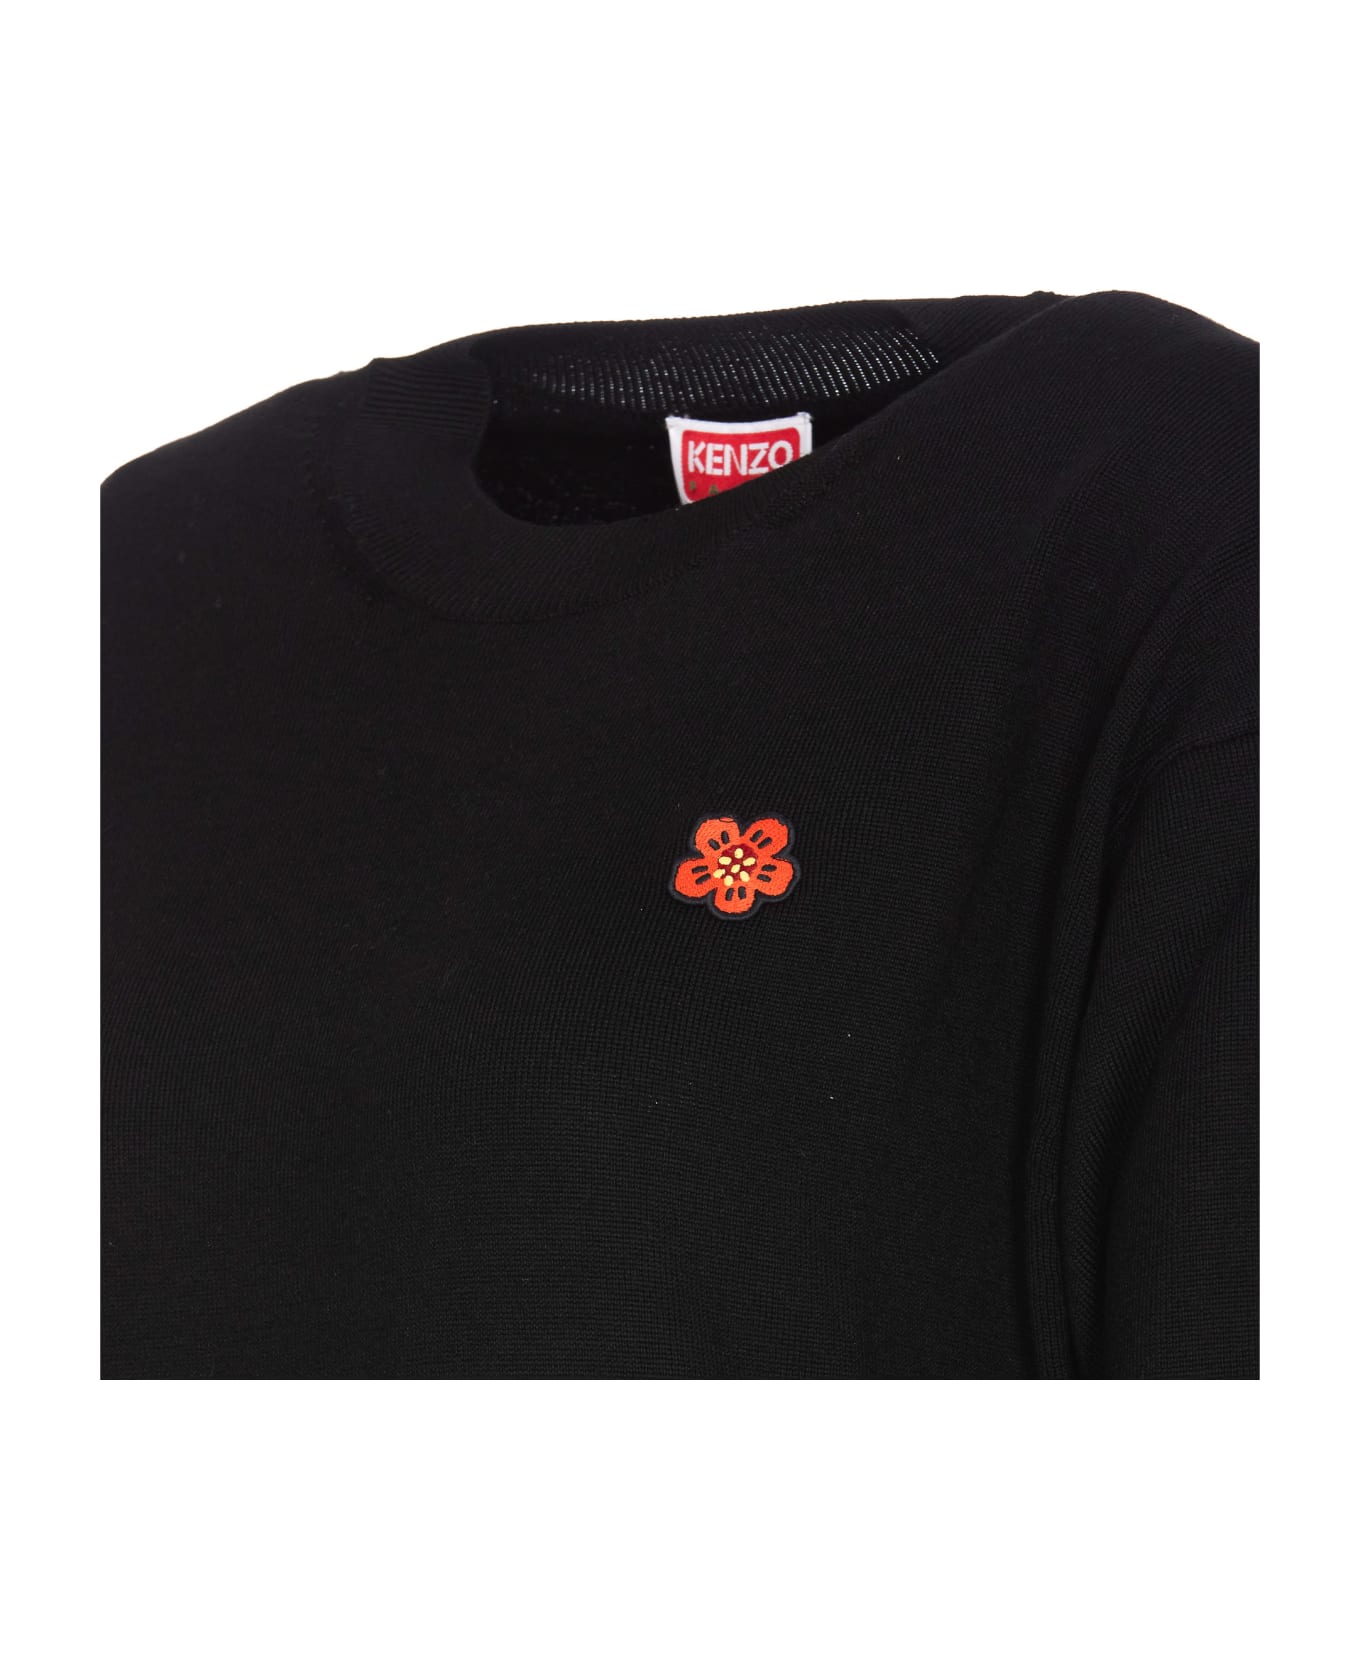 Kenzo Boke Crest Sweater - Black フリース